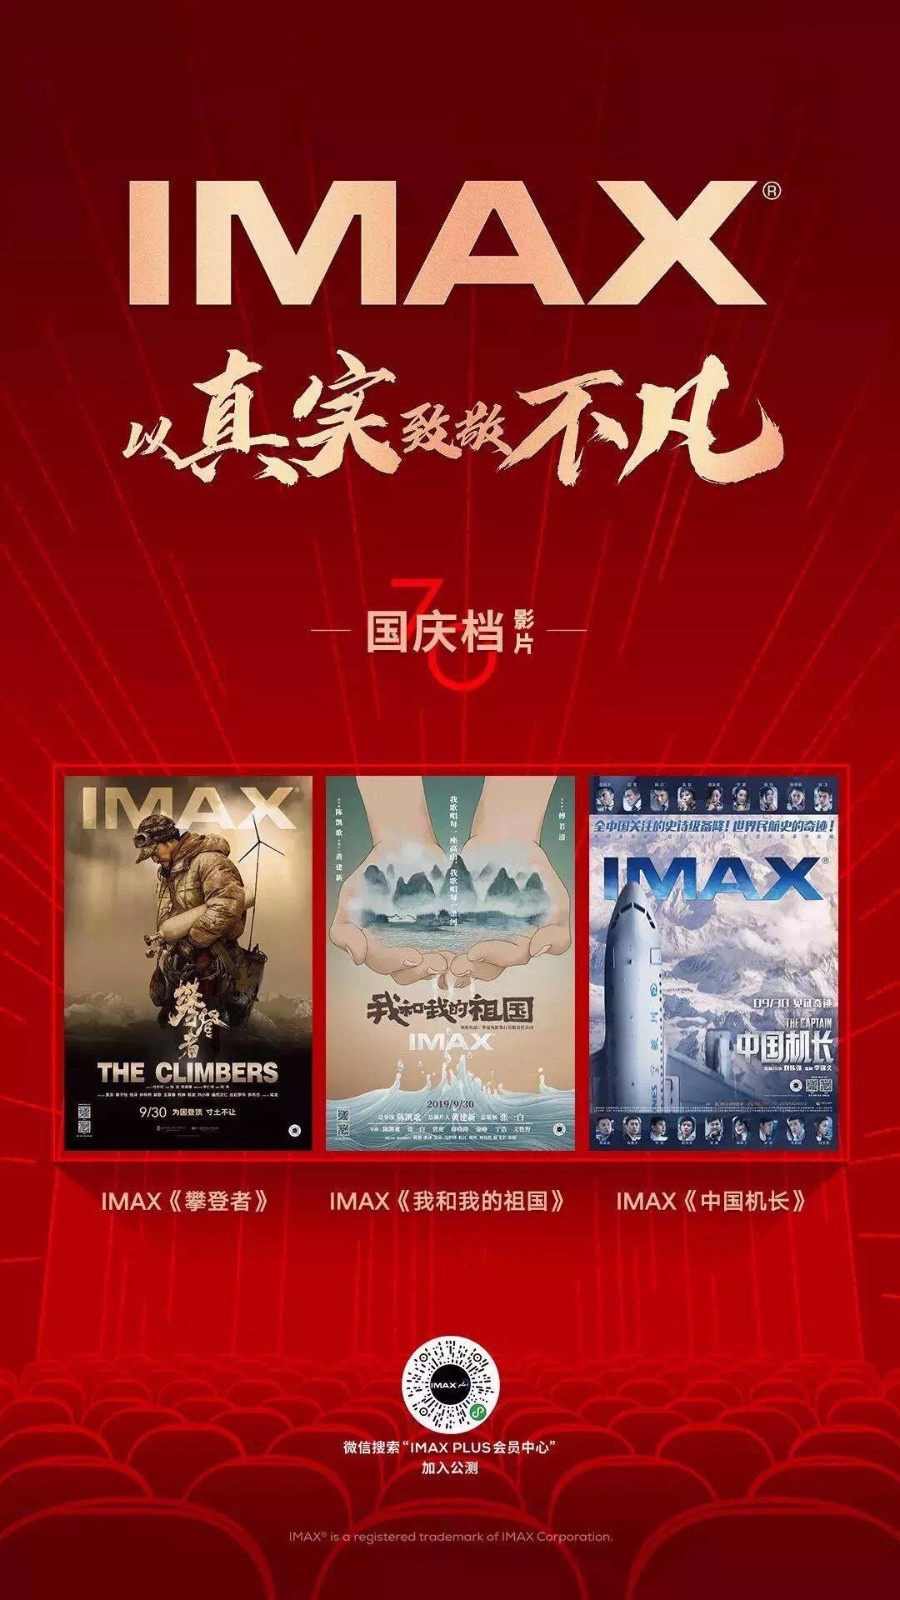 三部国庆档IMAX大片浓情献礼 以真实致敬不凡